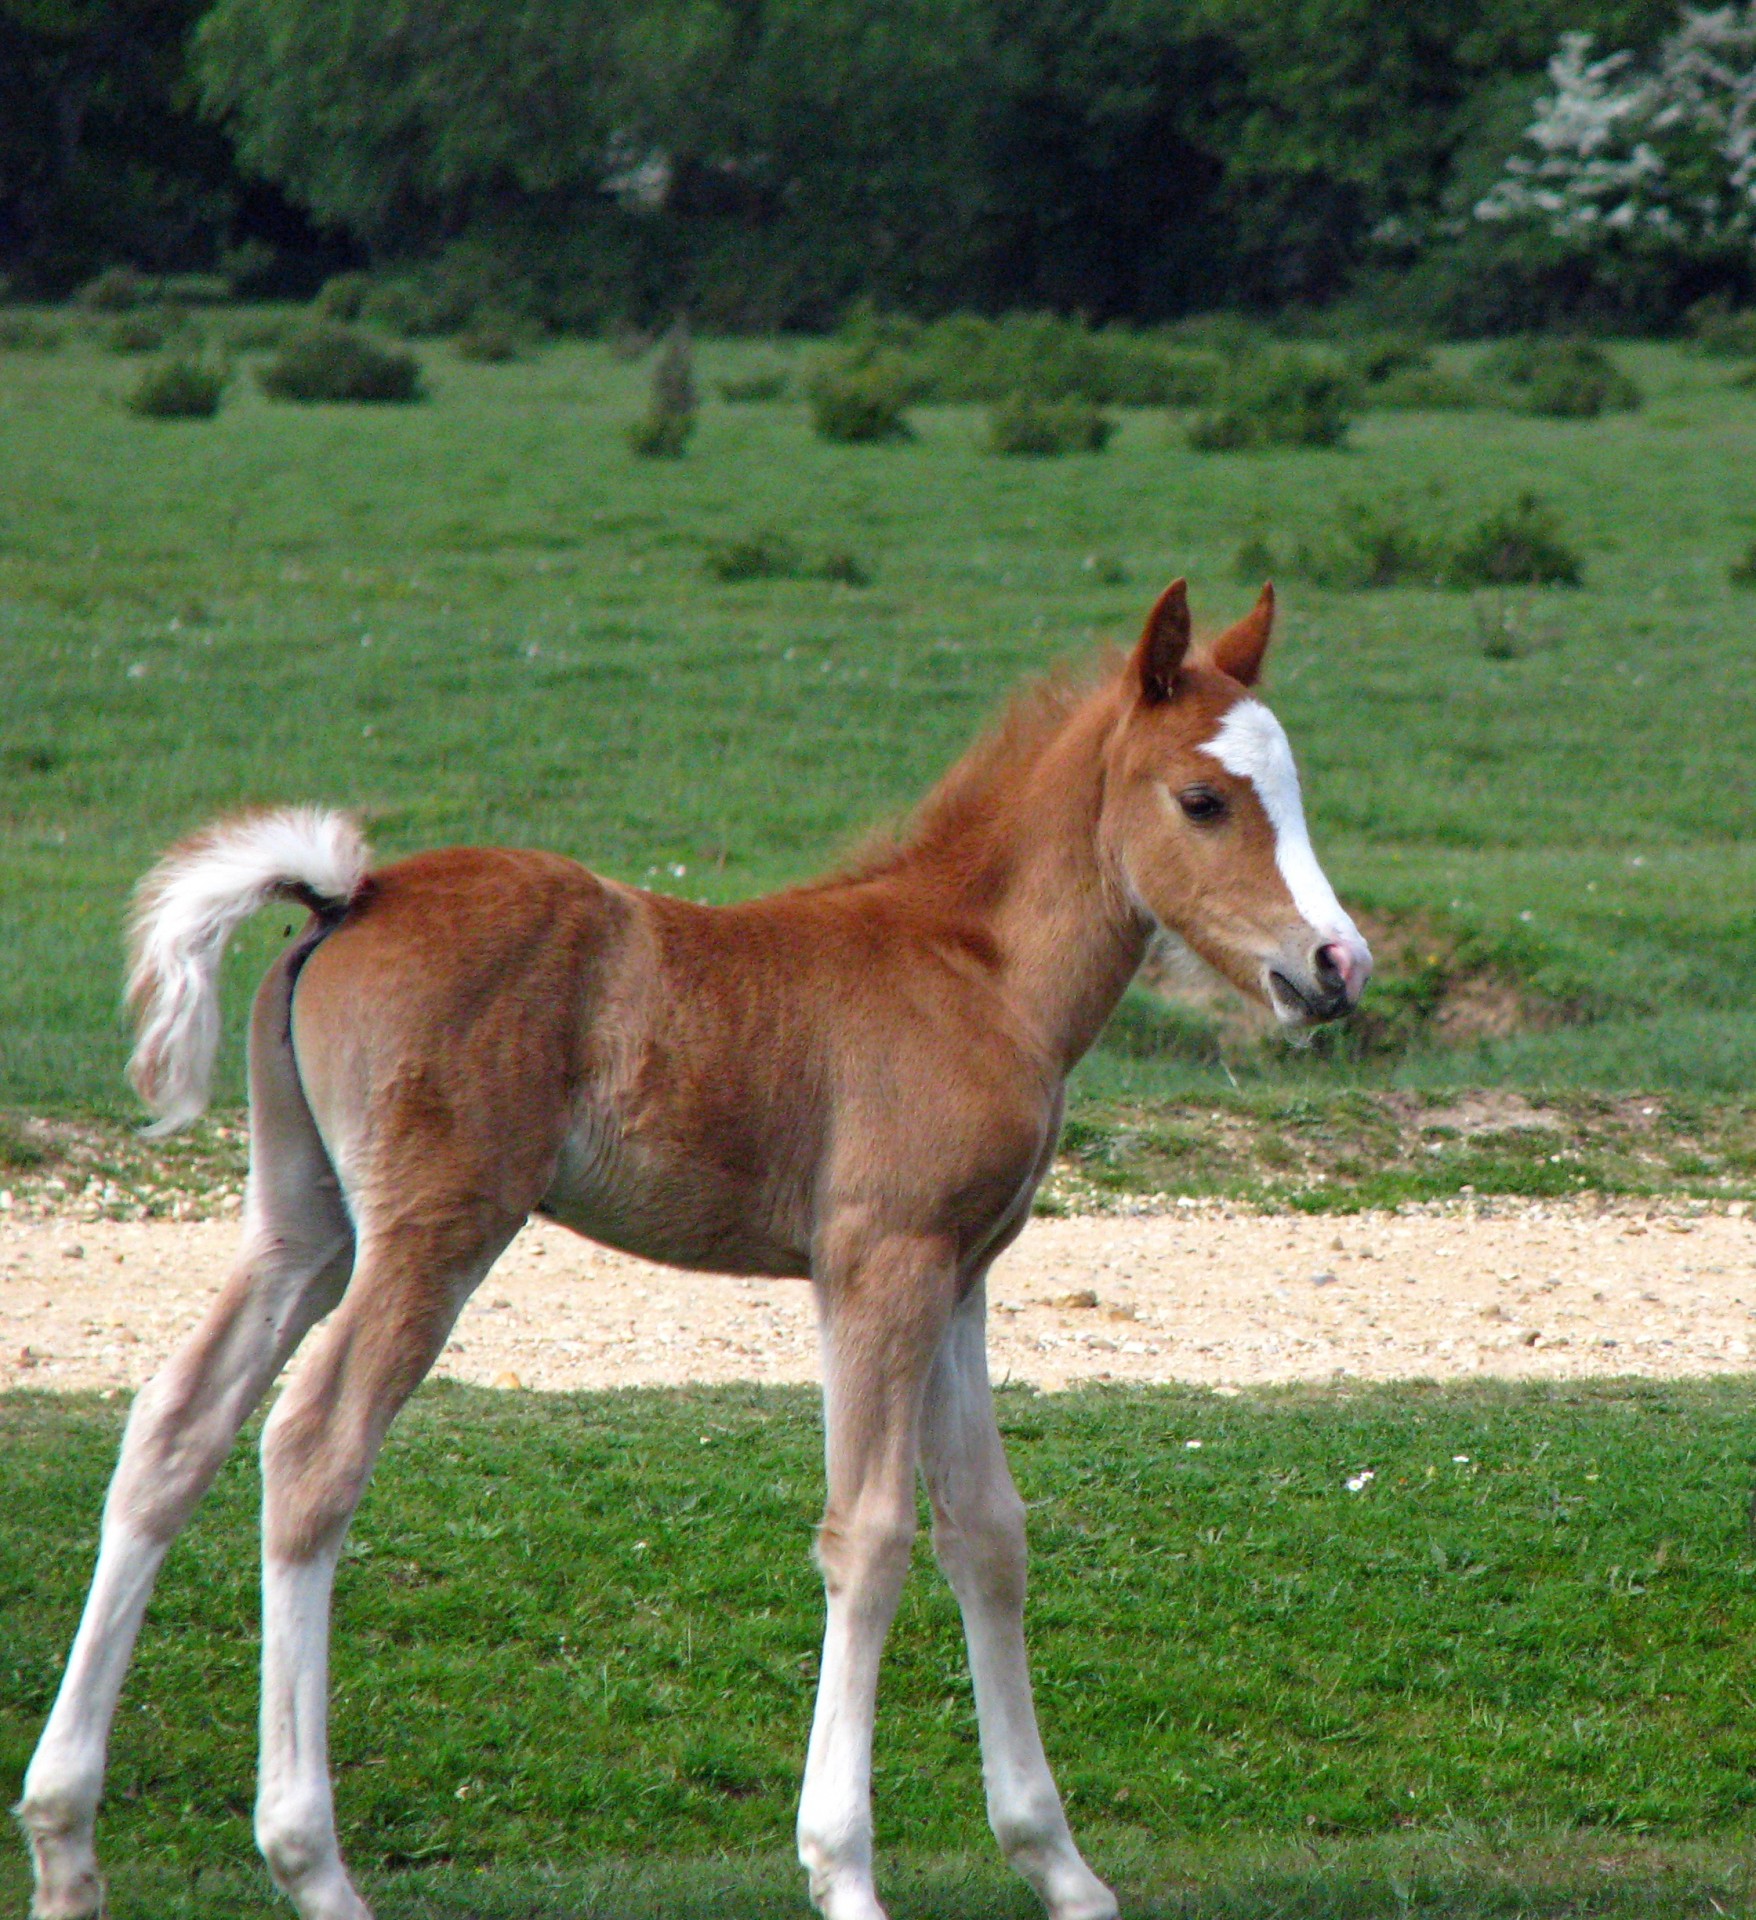 Cute Baby Foal